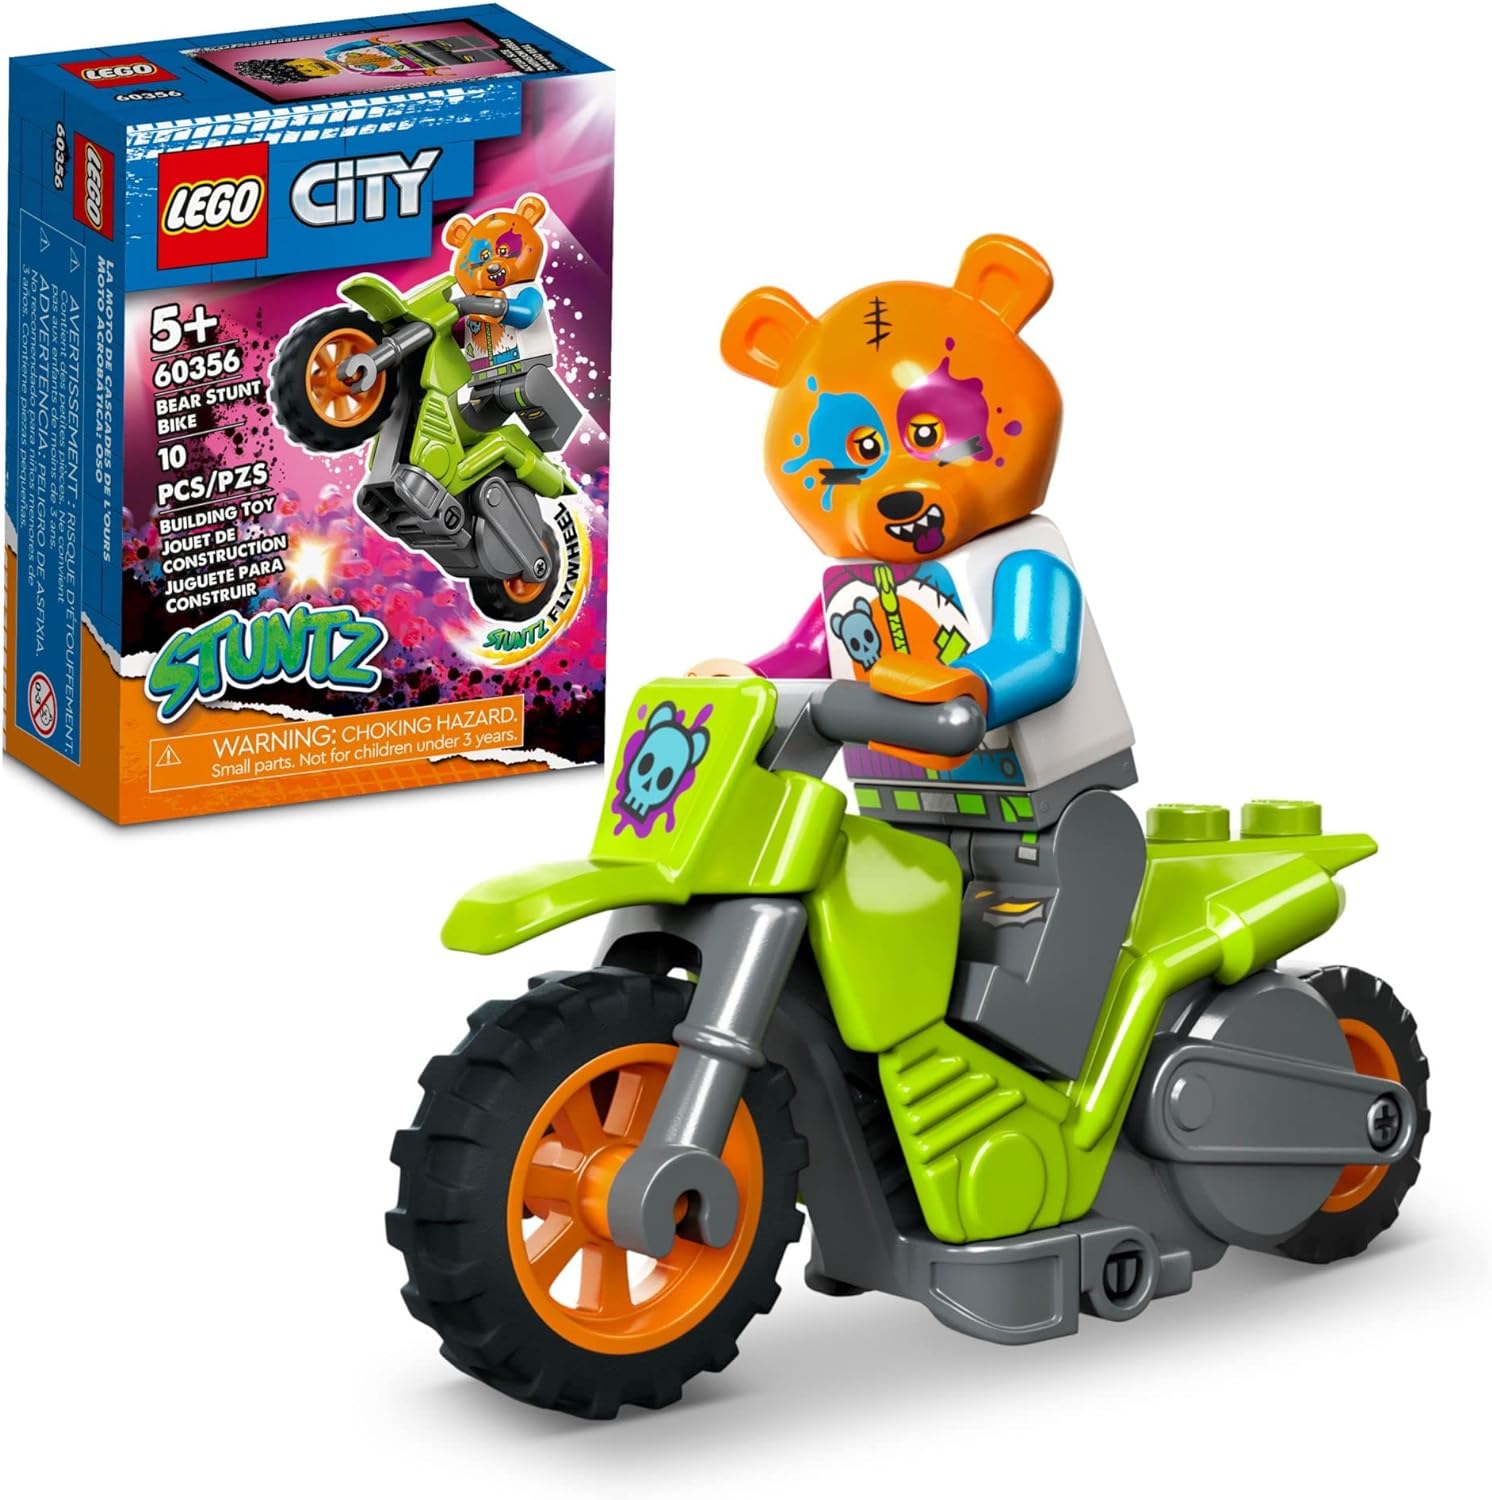 Đồ chơi Lego xe máy chạy bằng bánh đà LEGO City Stuntz Cyber Stunt Bike 60358 Flywheel-Powered Motorbike Toy to Perform Jumps and Tricks